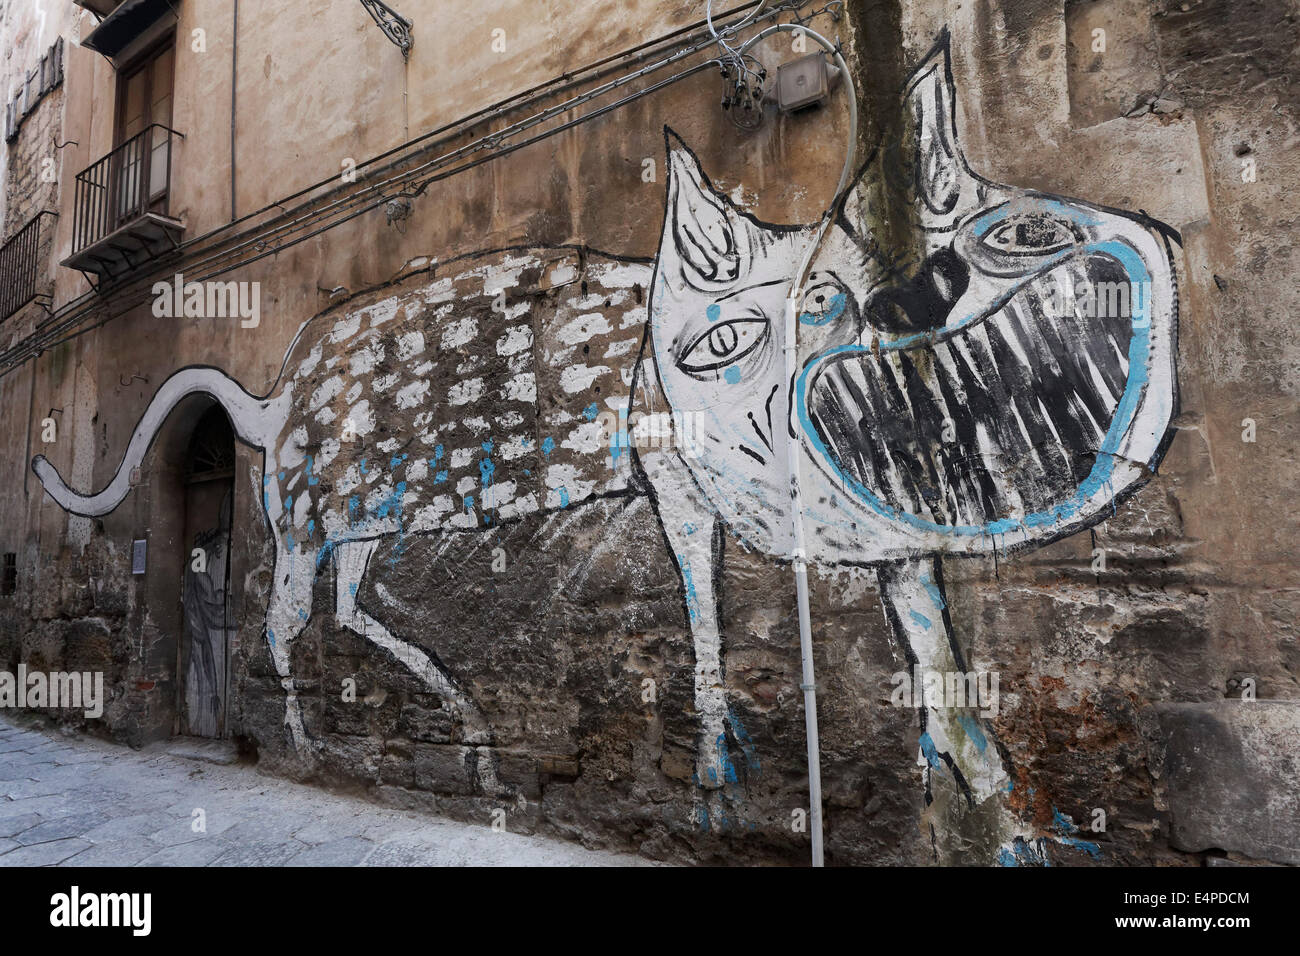 Vicious cane, murale nel centro storico di Palermo, in provincia di Palermo, Sicilia, Italia Foto Stock